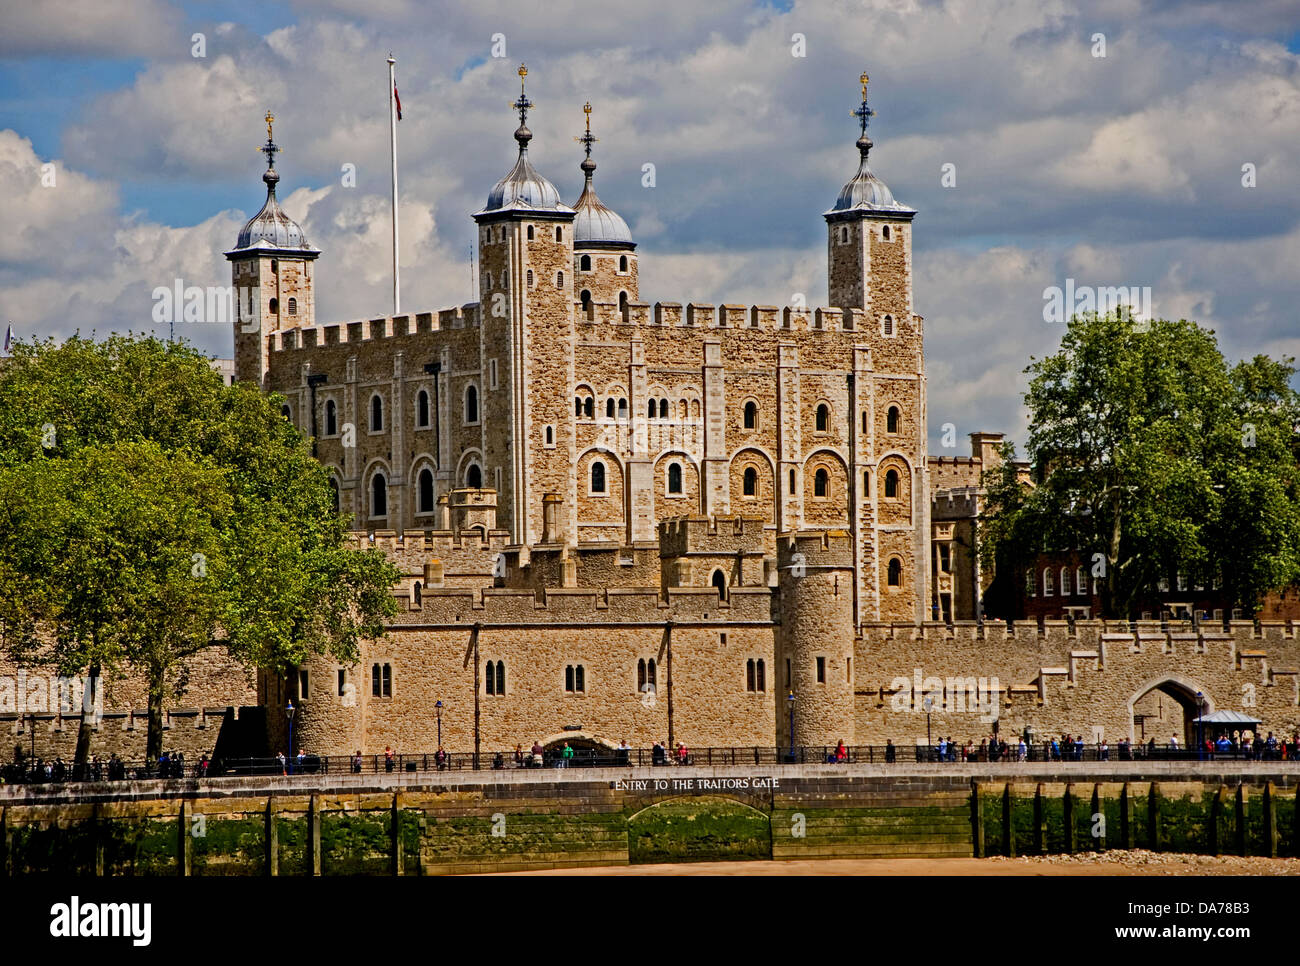 La Torre di Londra è un iconico punto di riferimento di Londra, situato sulle rive del fiume Tamigi. Esso ha un migliaio di anni di storia risalente a Guglielmo il Conquistatore Foto Stock